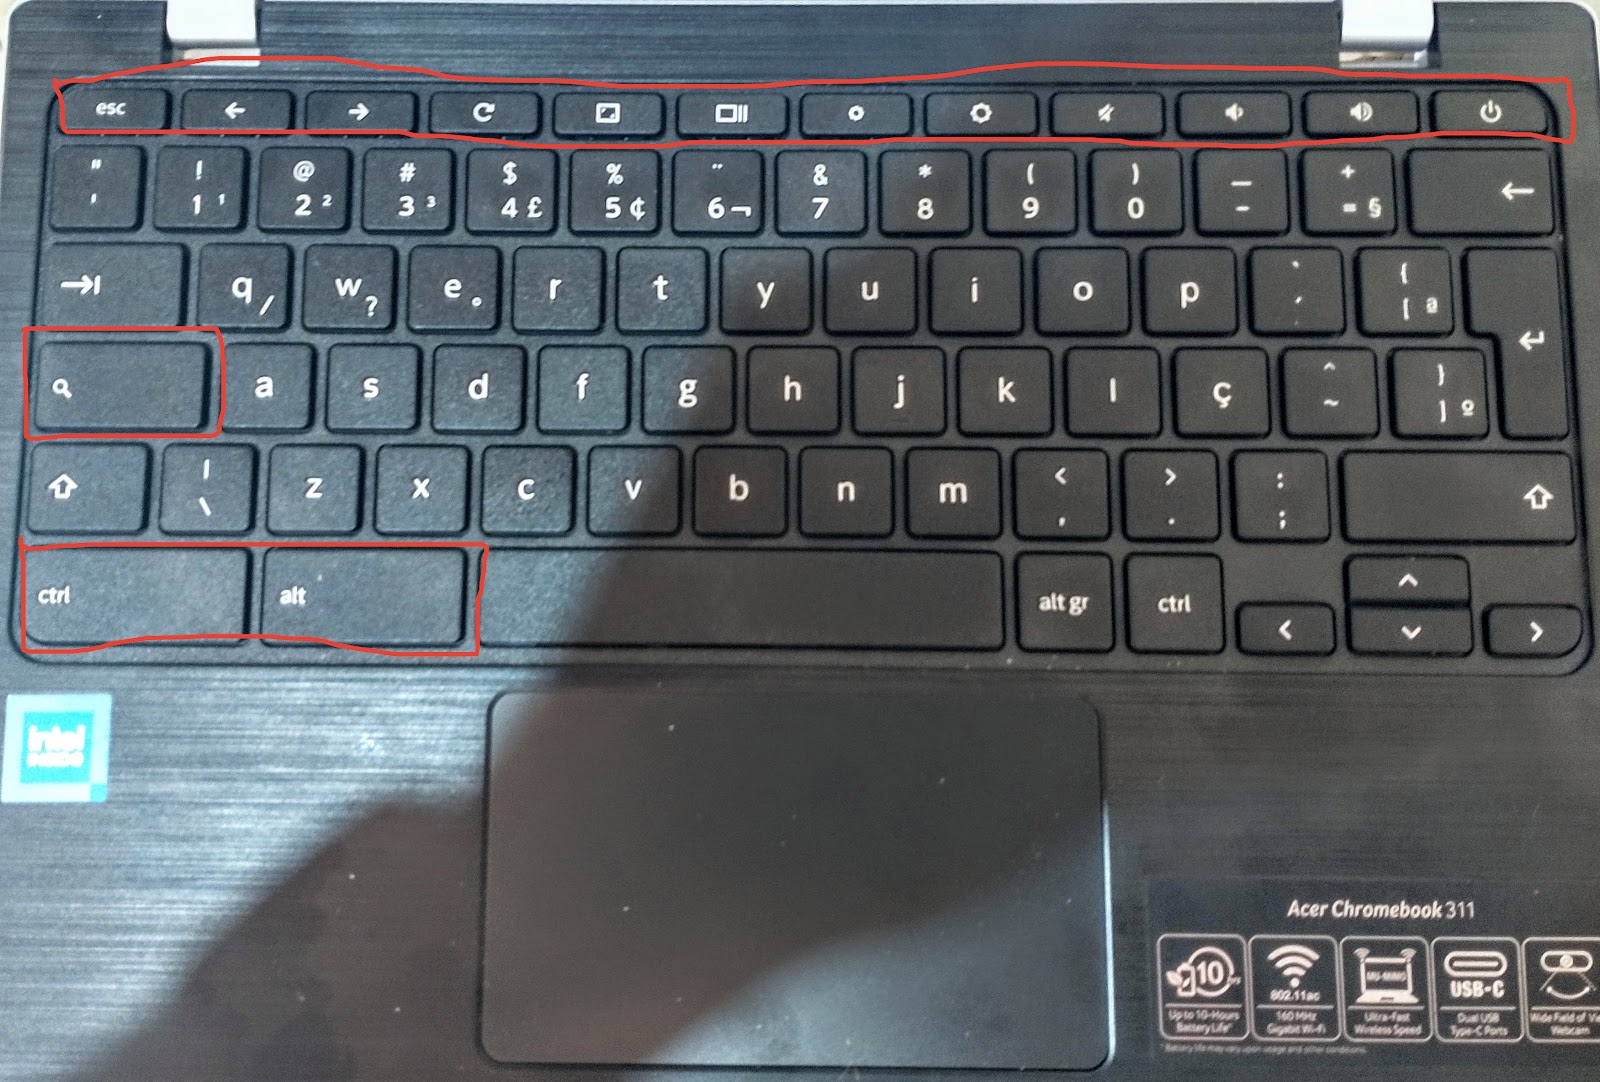 Foto com vista superior do teclado do Chromebook Acer 311. 